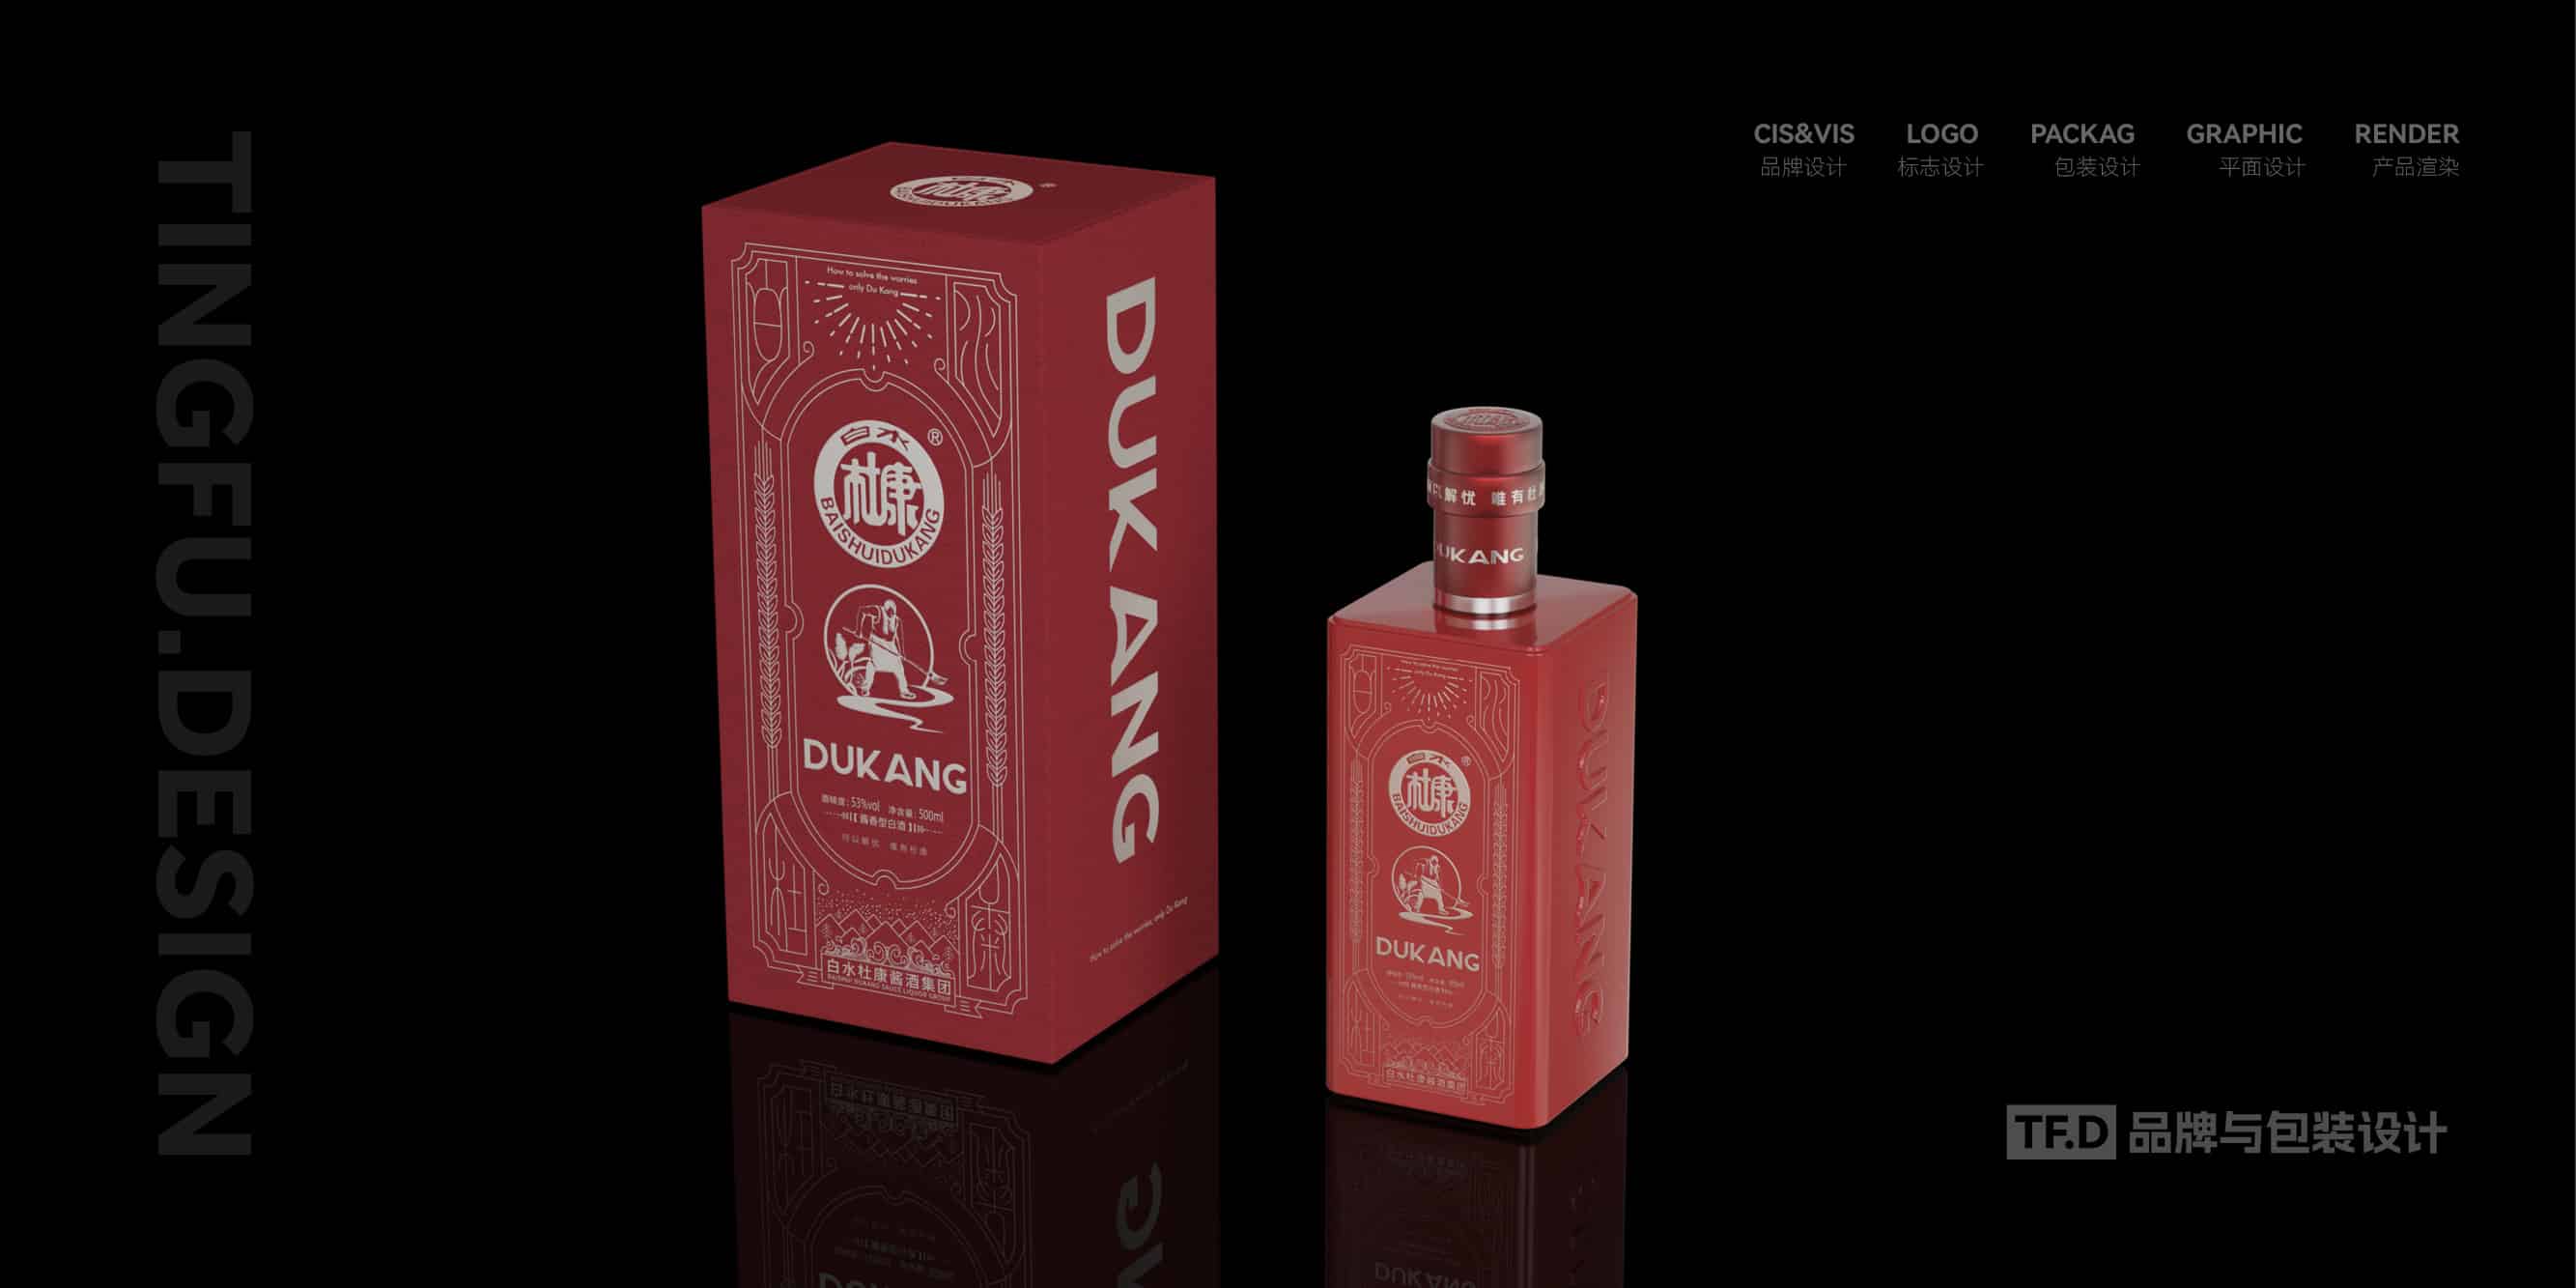 TFD品牌与包装设计-部分酒包装设计案例7-tuya.jpg